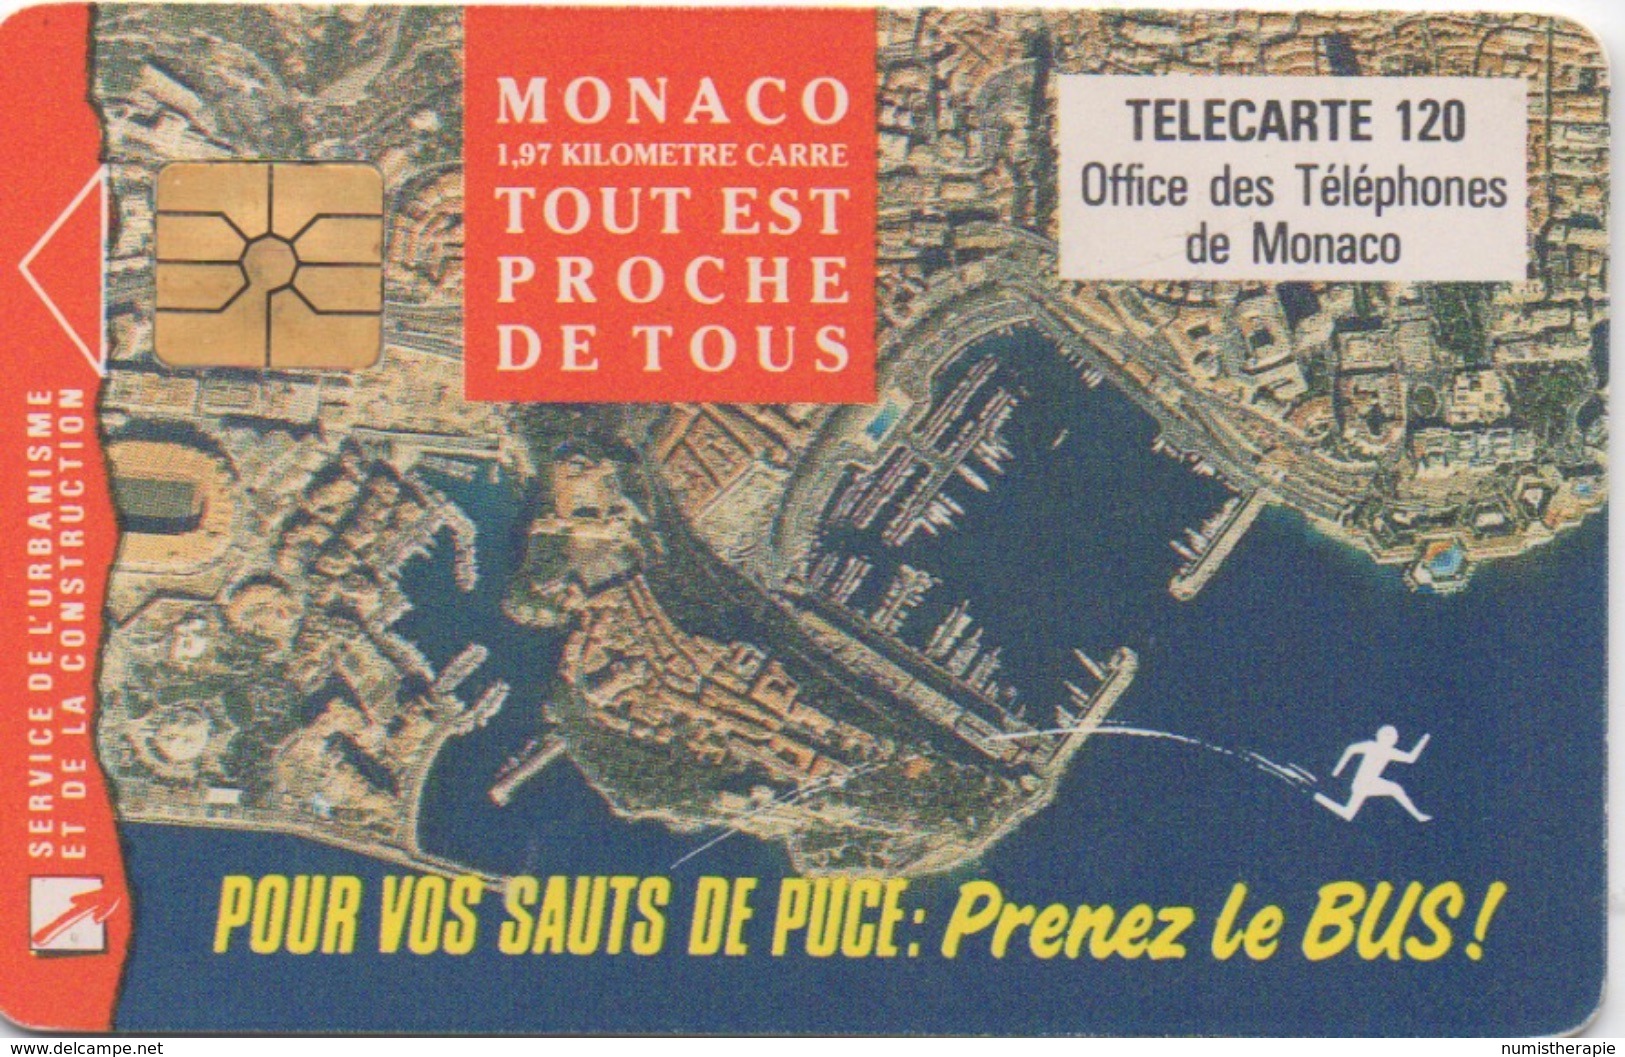 Monaco : 1,97 Kilomètre Carré - Tout Est Proche De Tous 1993 - Monace